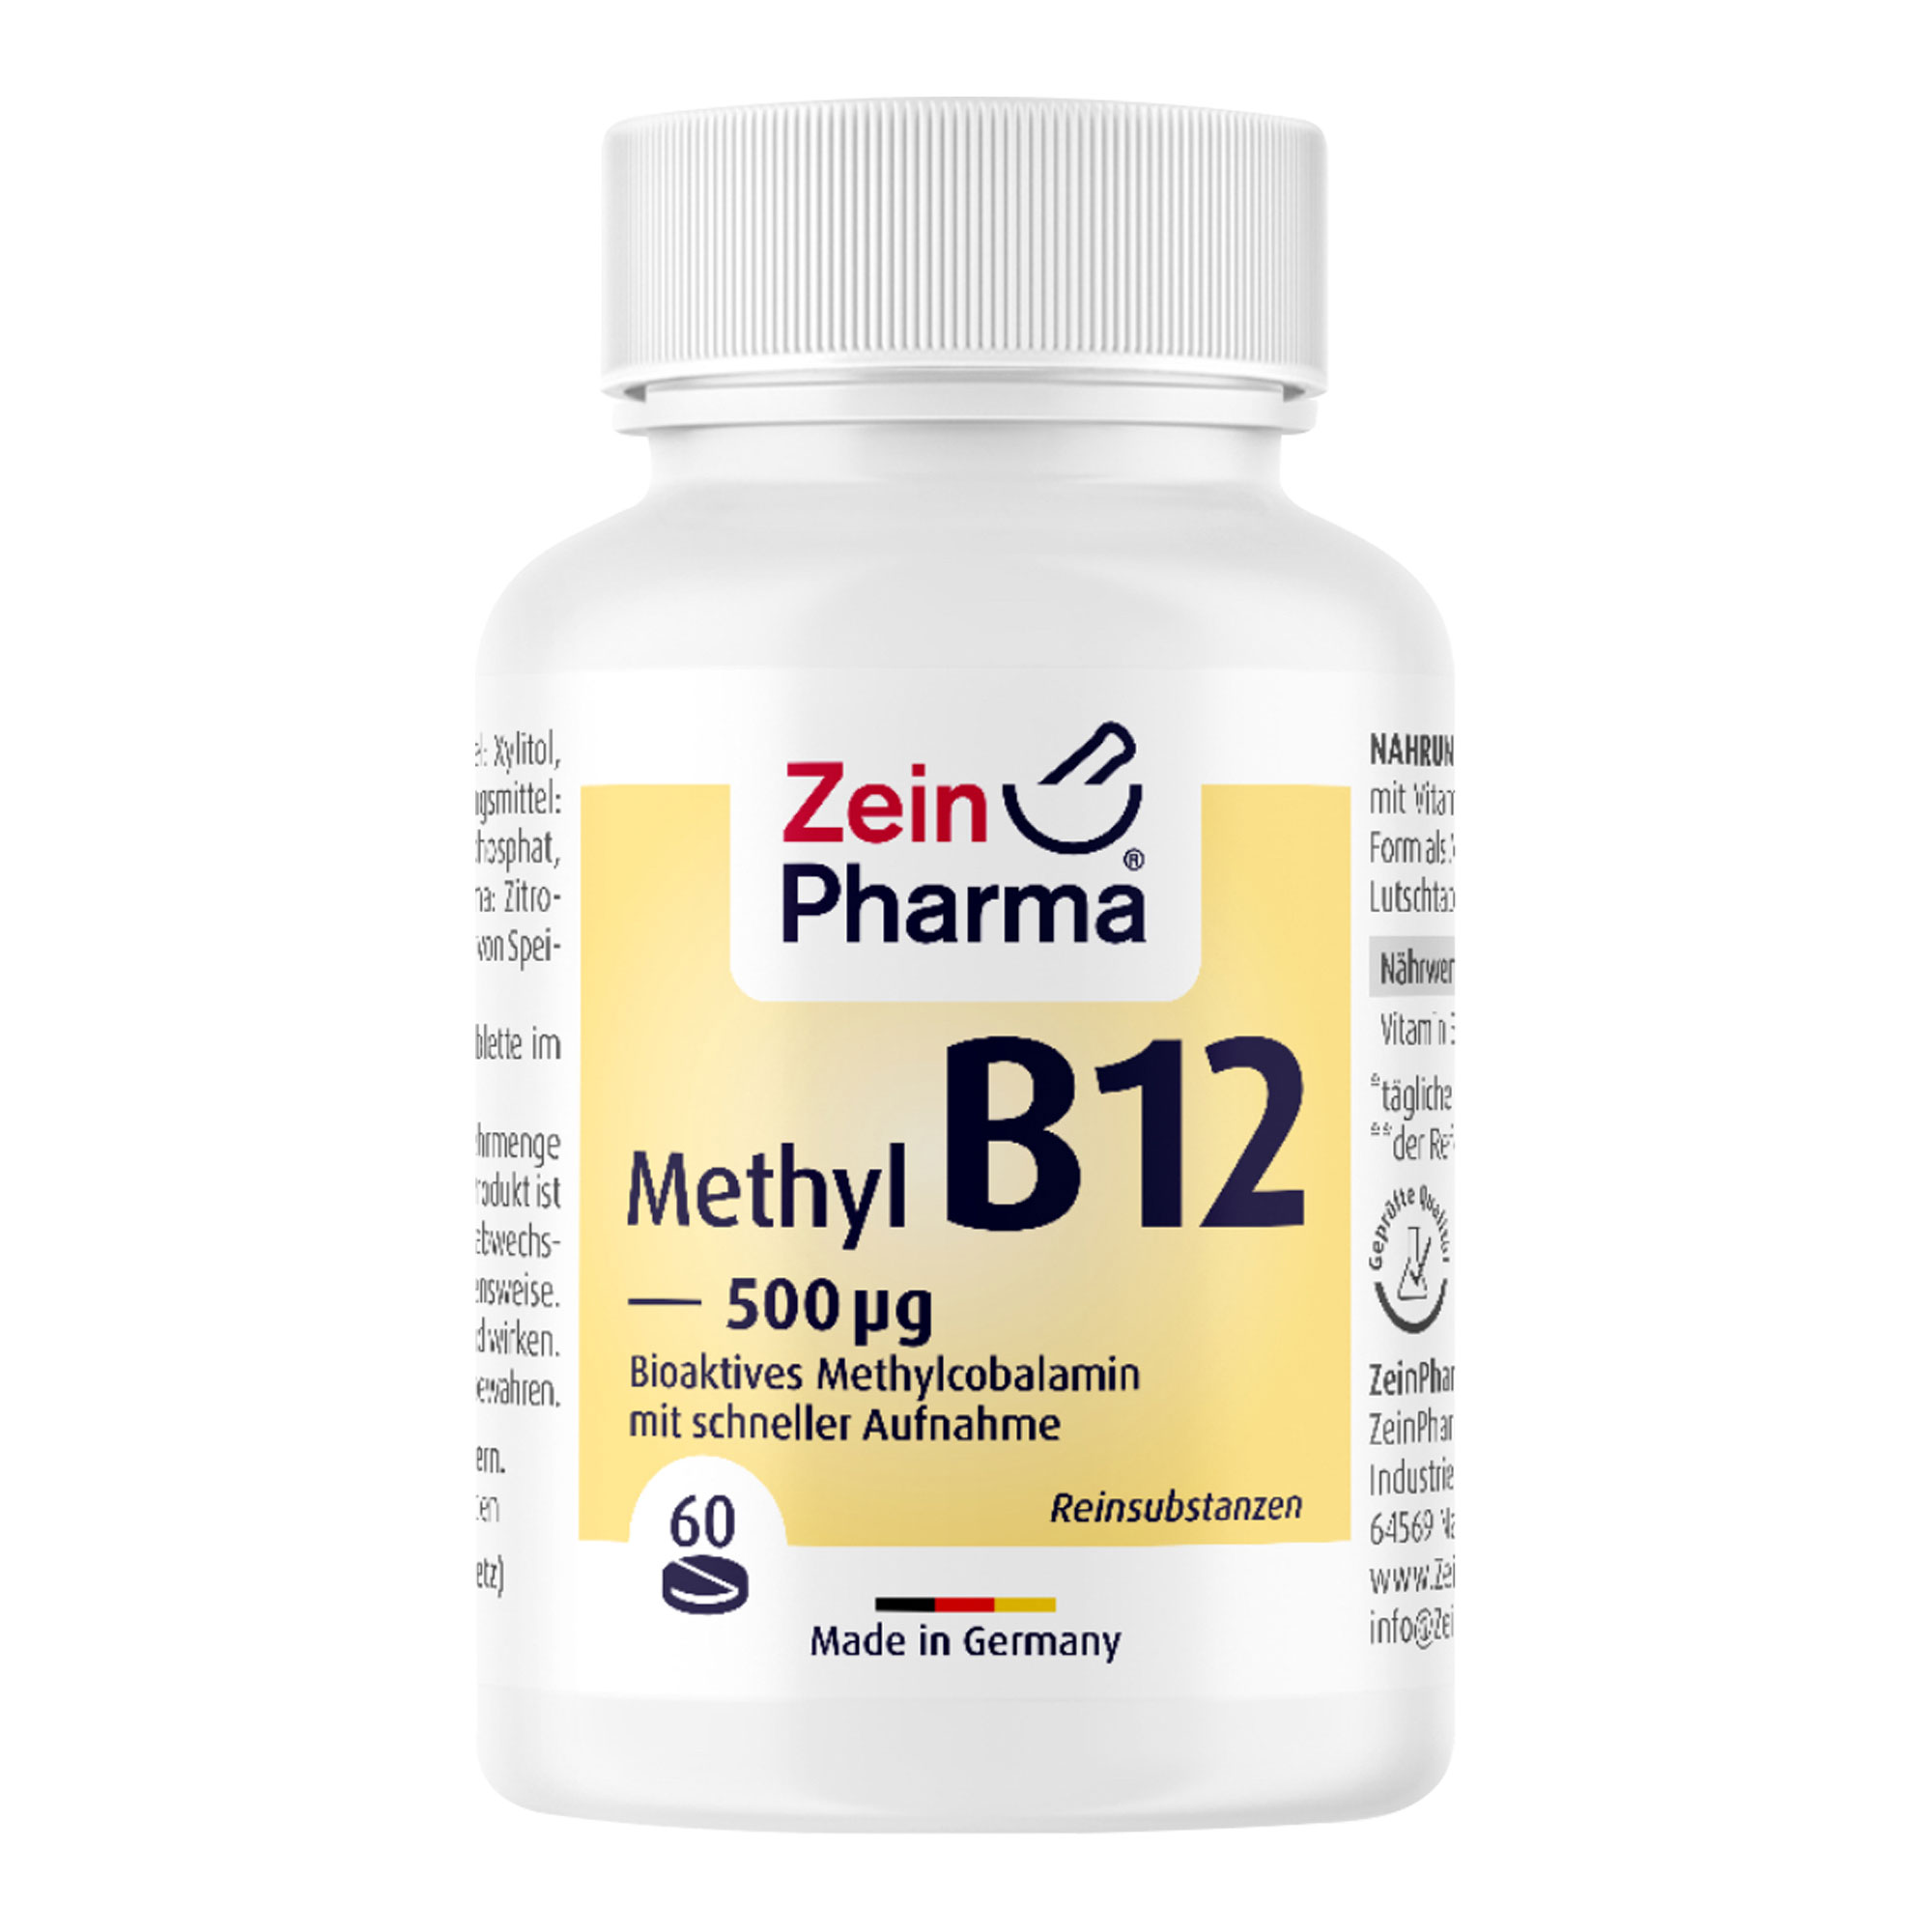 Nahrungsergänzungsmittel mit Vitamin B12 in seiner bioaktiven Form als Methylcobalamin. Schmeckt fruchtig-frisch nach Zitrone.